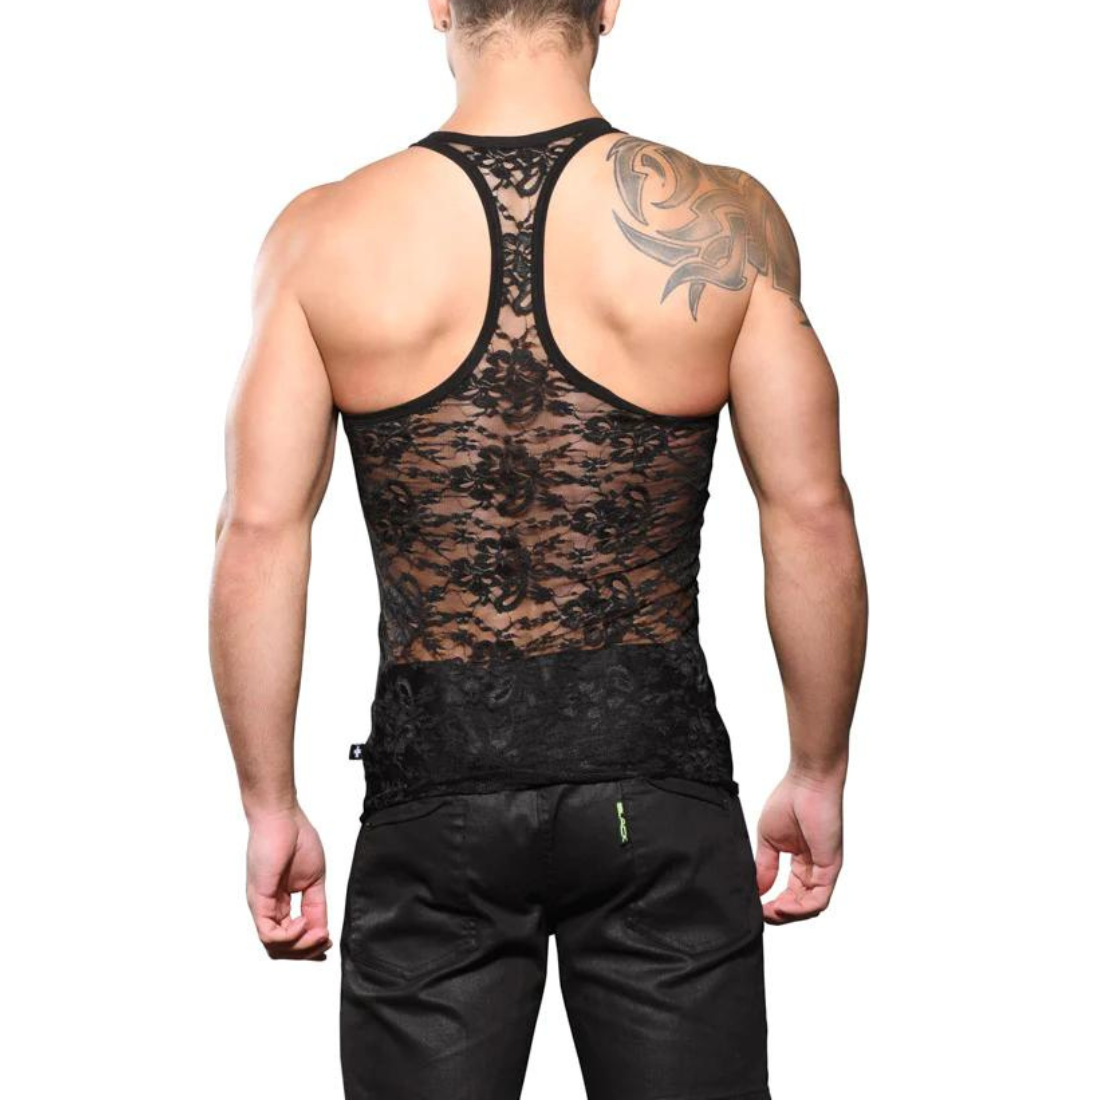 Sexy zwart lace tank top, ontworpen door het Amerikaanse gay merk Andrew Christian en te koop bij Flavourez.